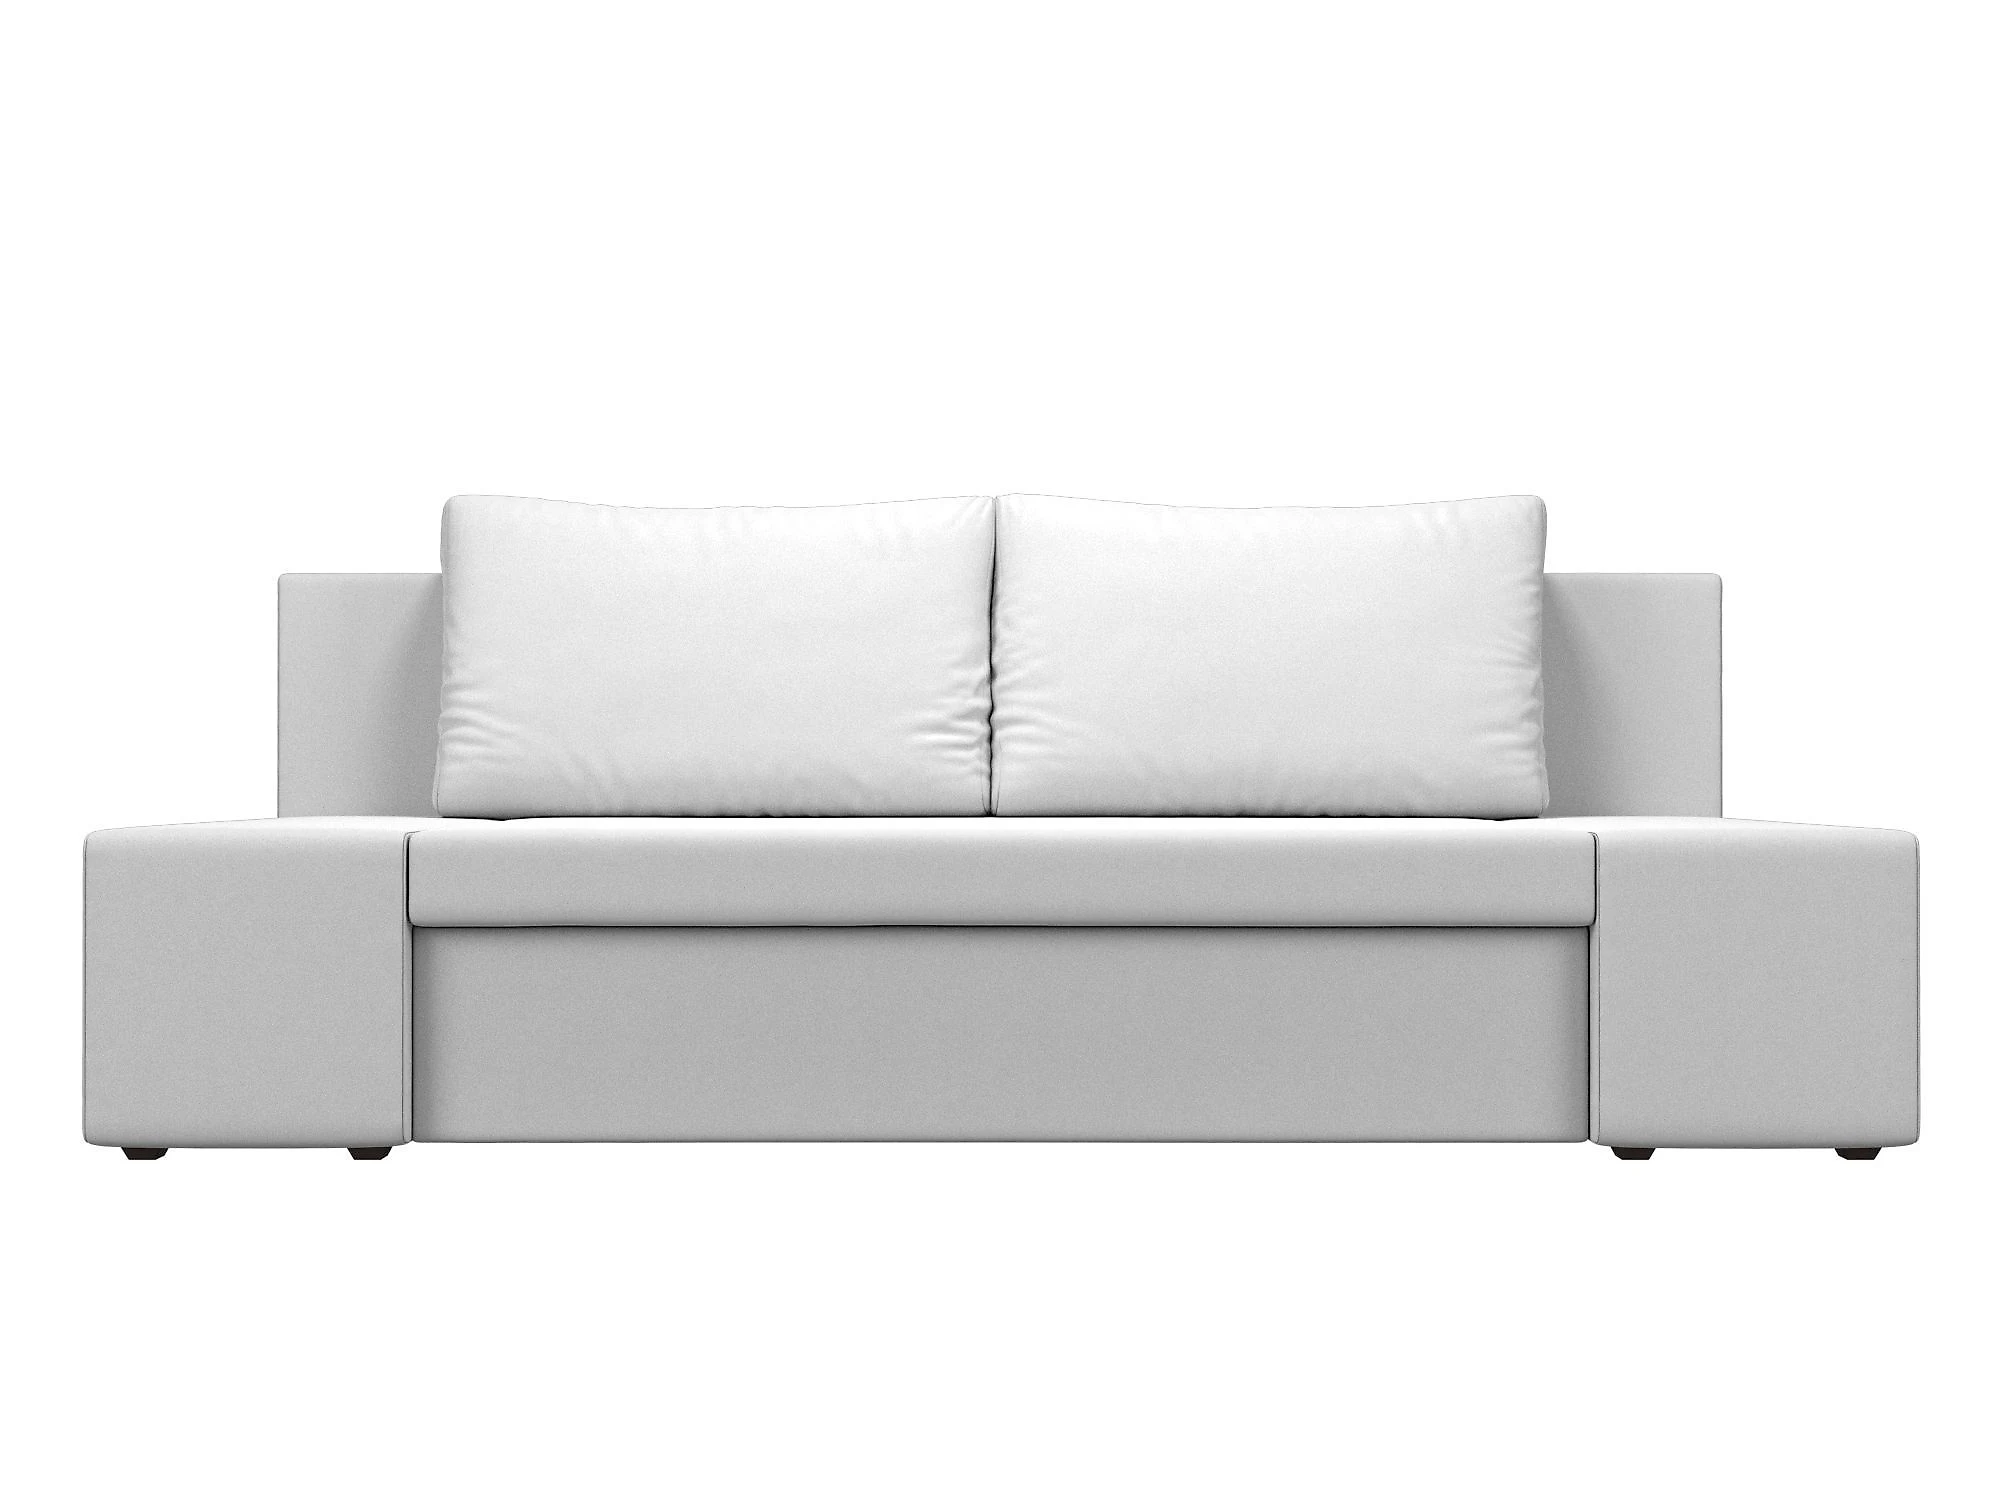  кожаный диван еврокнижка Сан Марко Дизайн 15